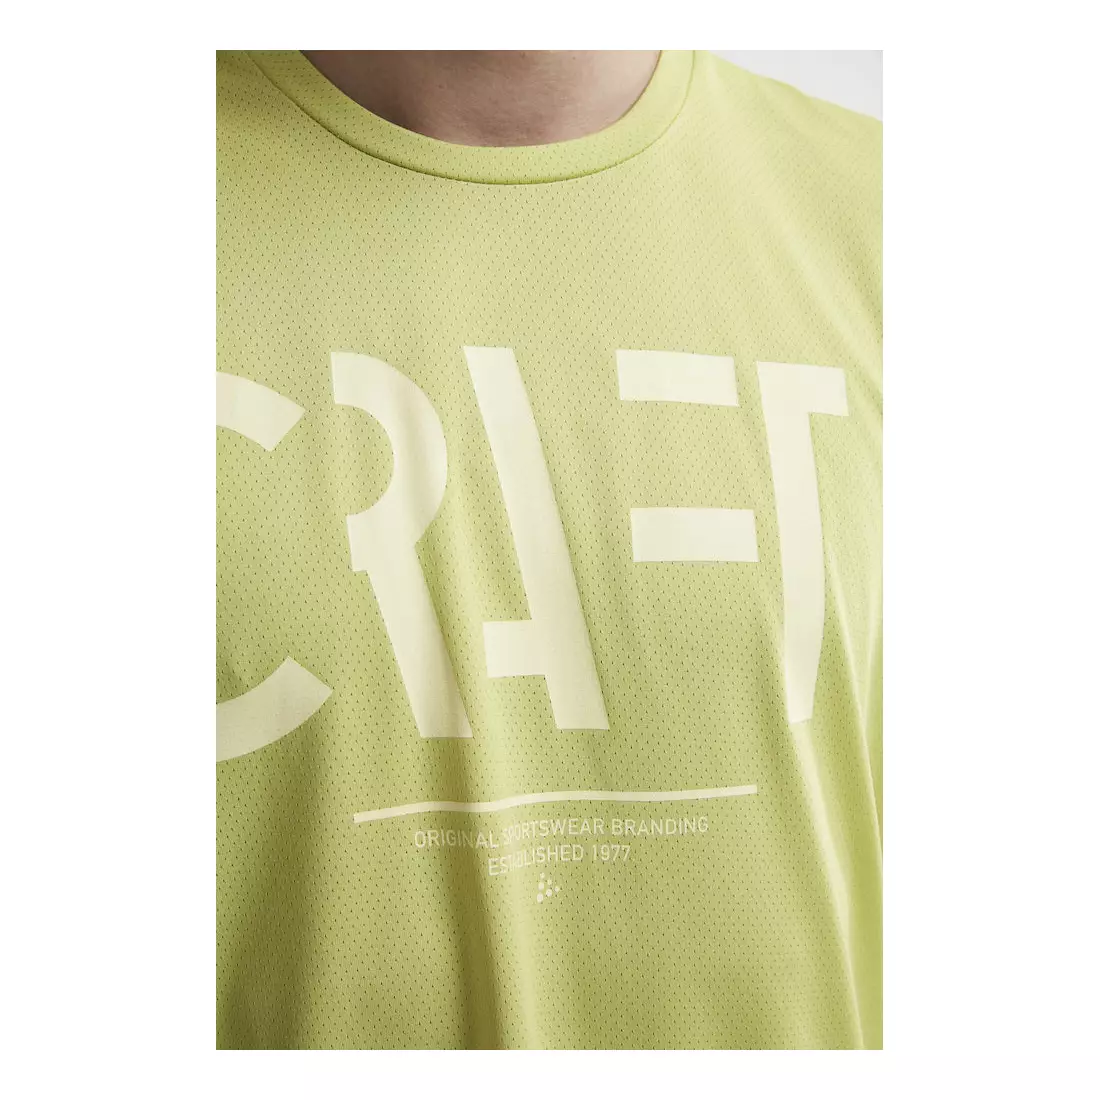 CRAFT EAZE MESH Herren T-Shirt für Sport / Laufen grün 1907018-611000